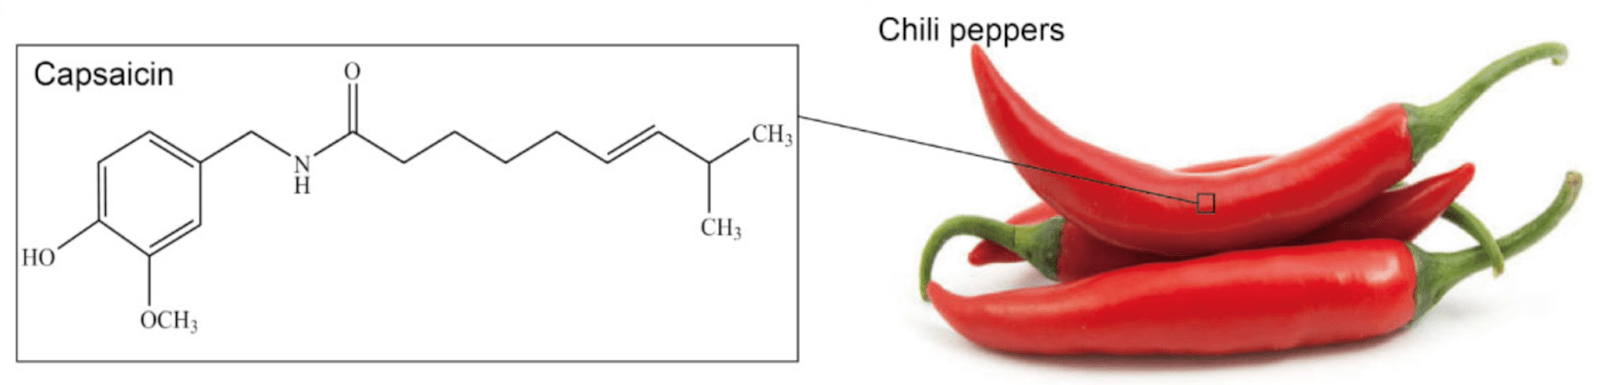 Химическая структура капсаицина, выделенного из перца чили